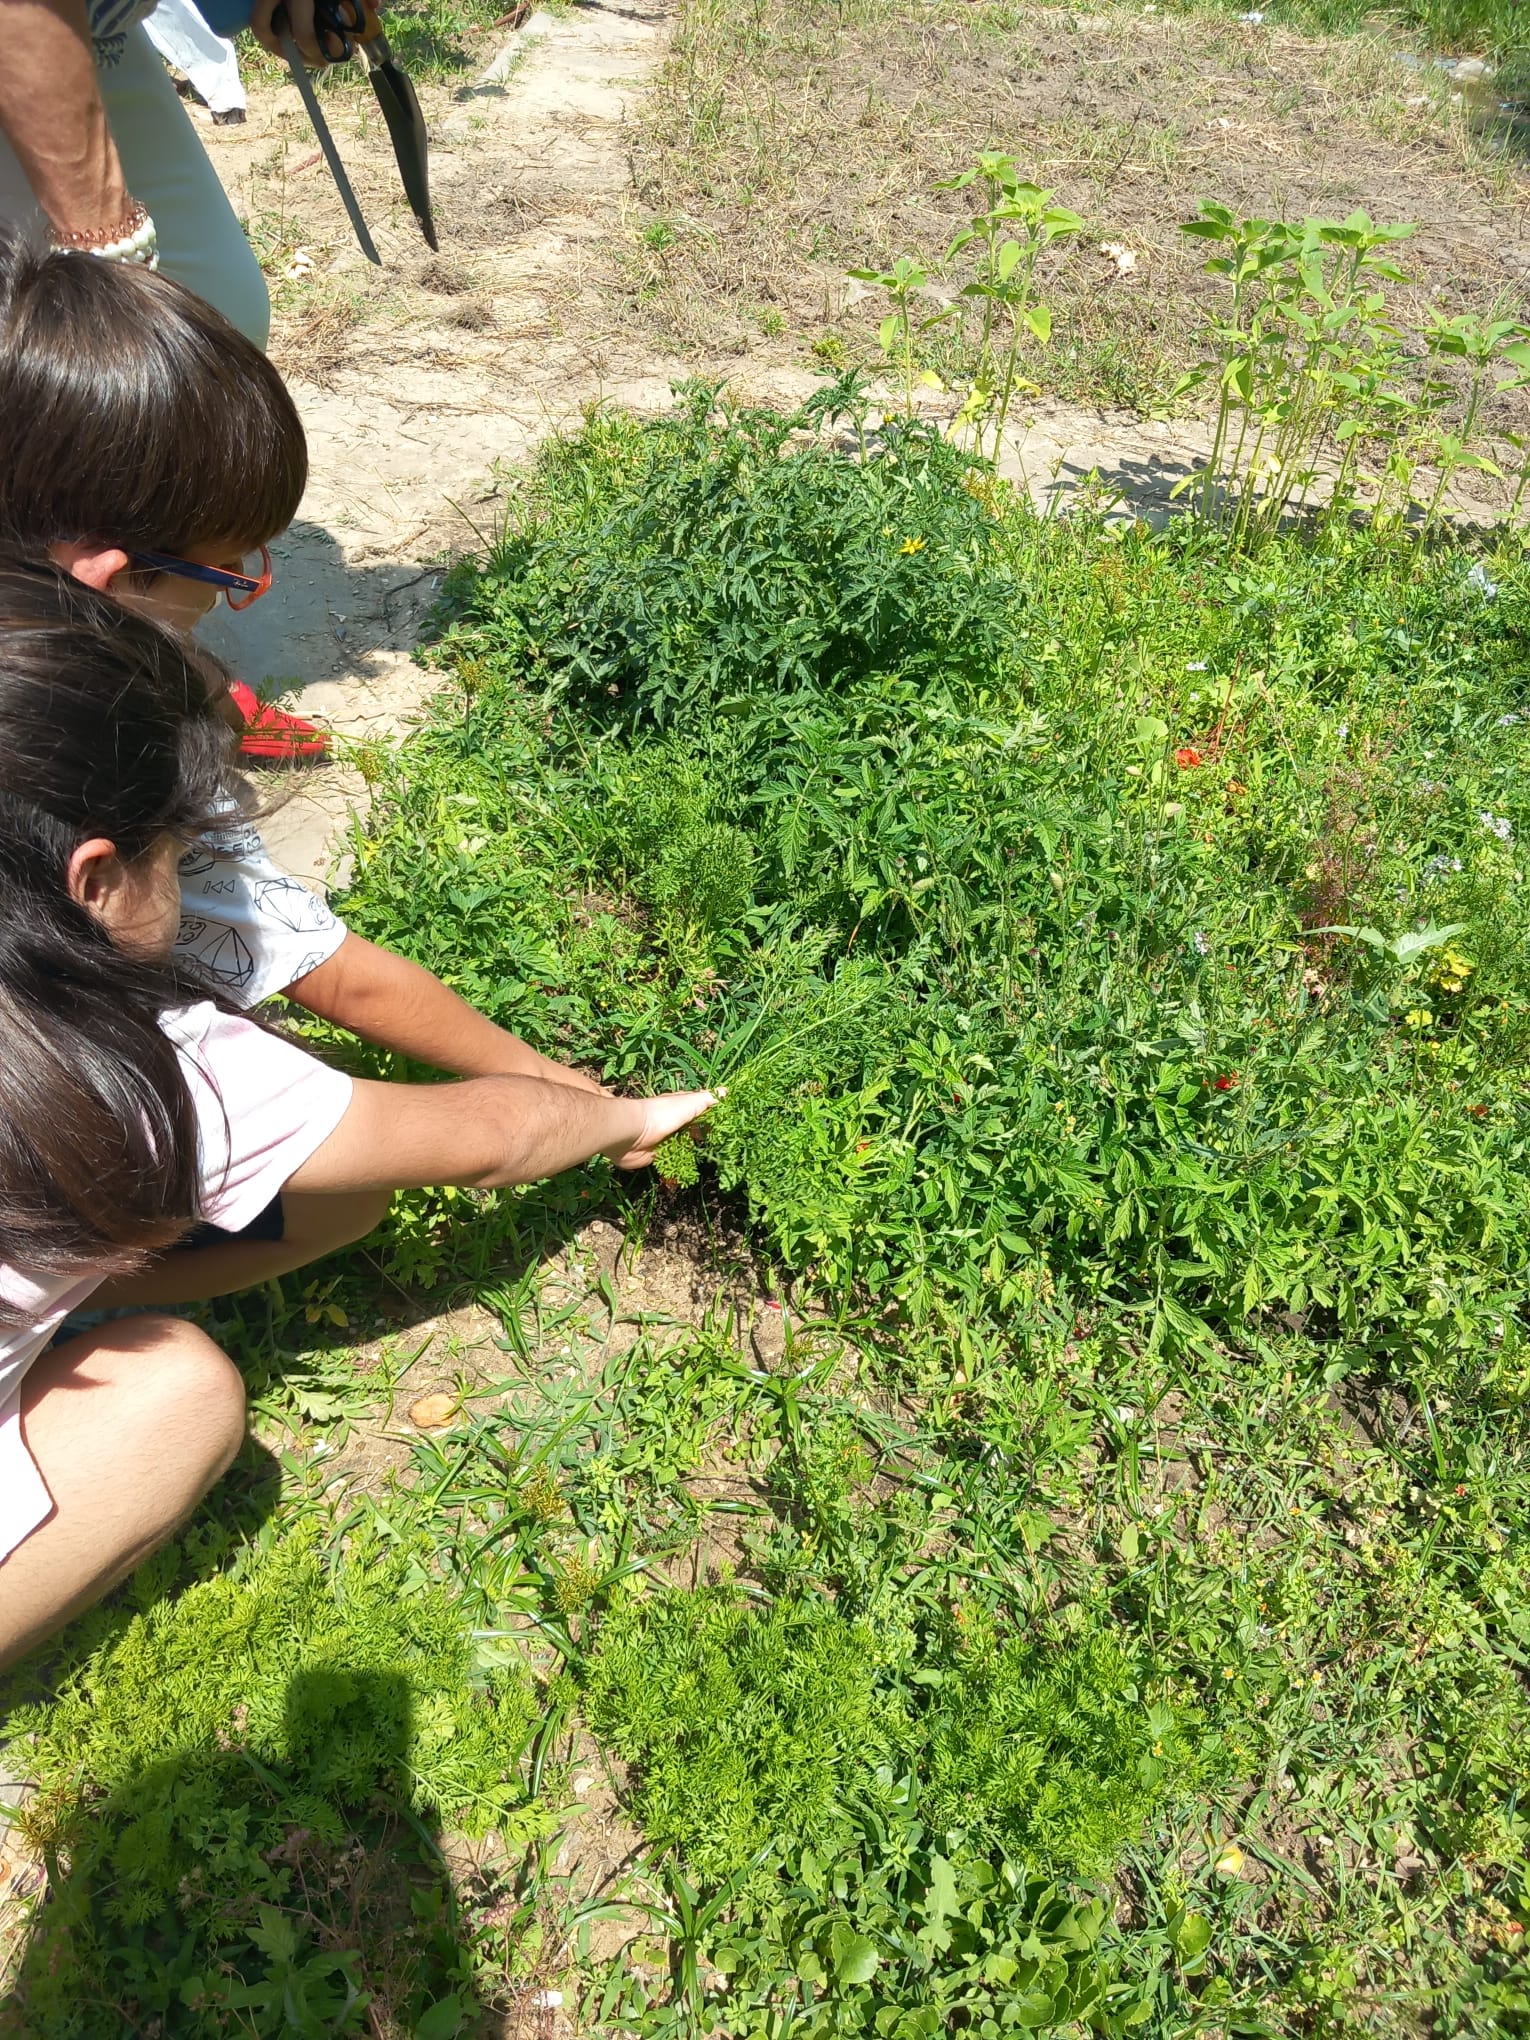 Os alunos a colherem os legumes ( cenouras).